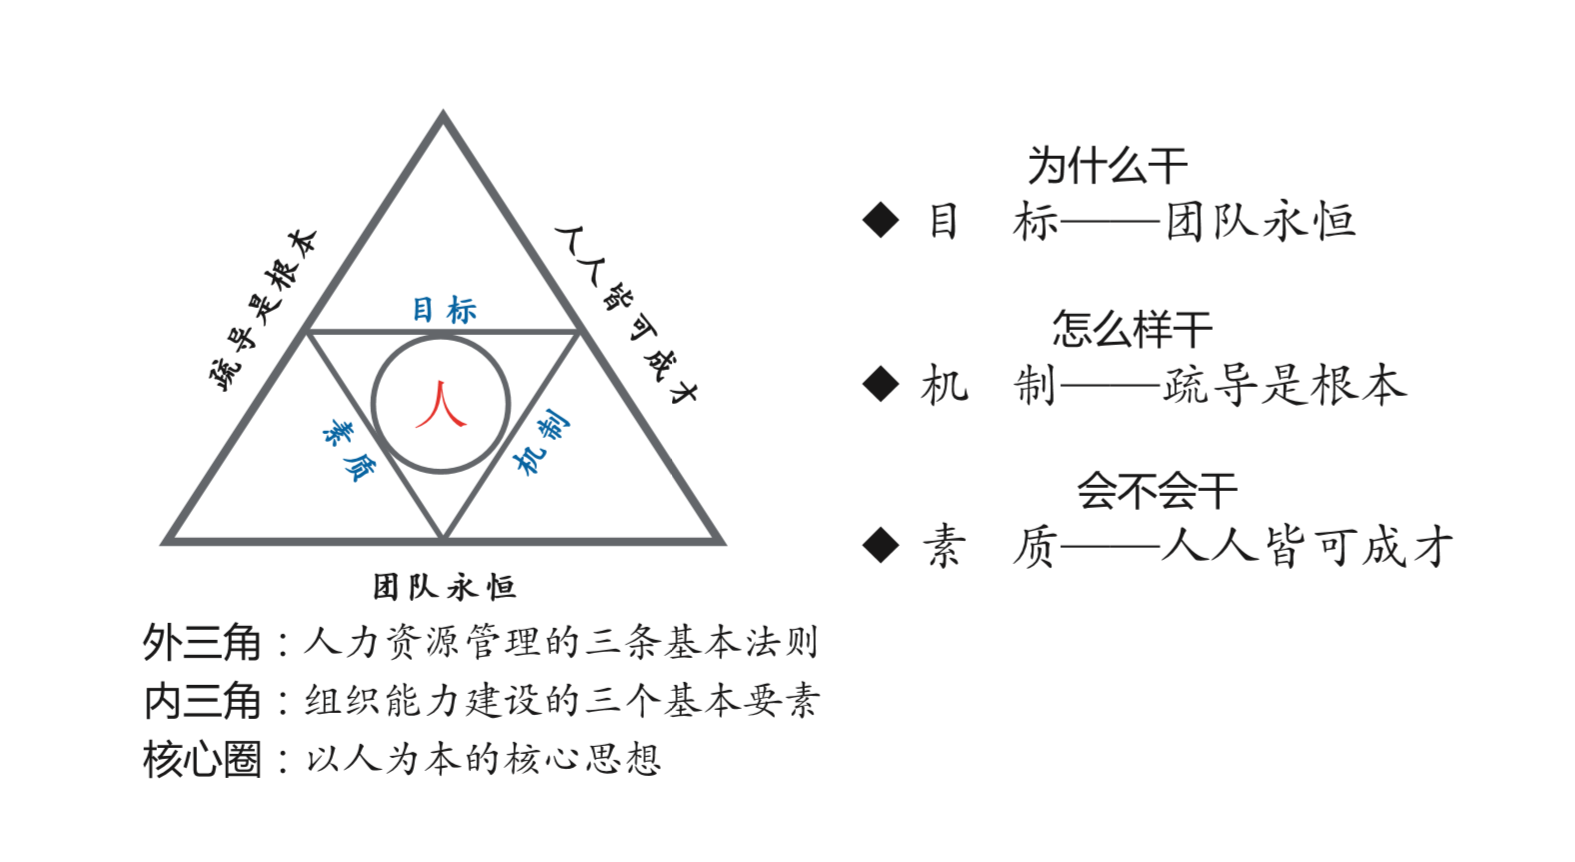 都江堰“三角法则”.png